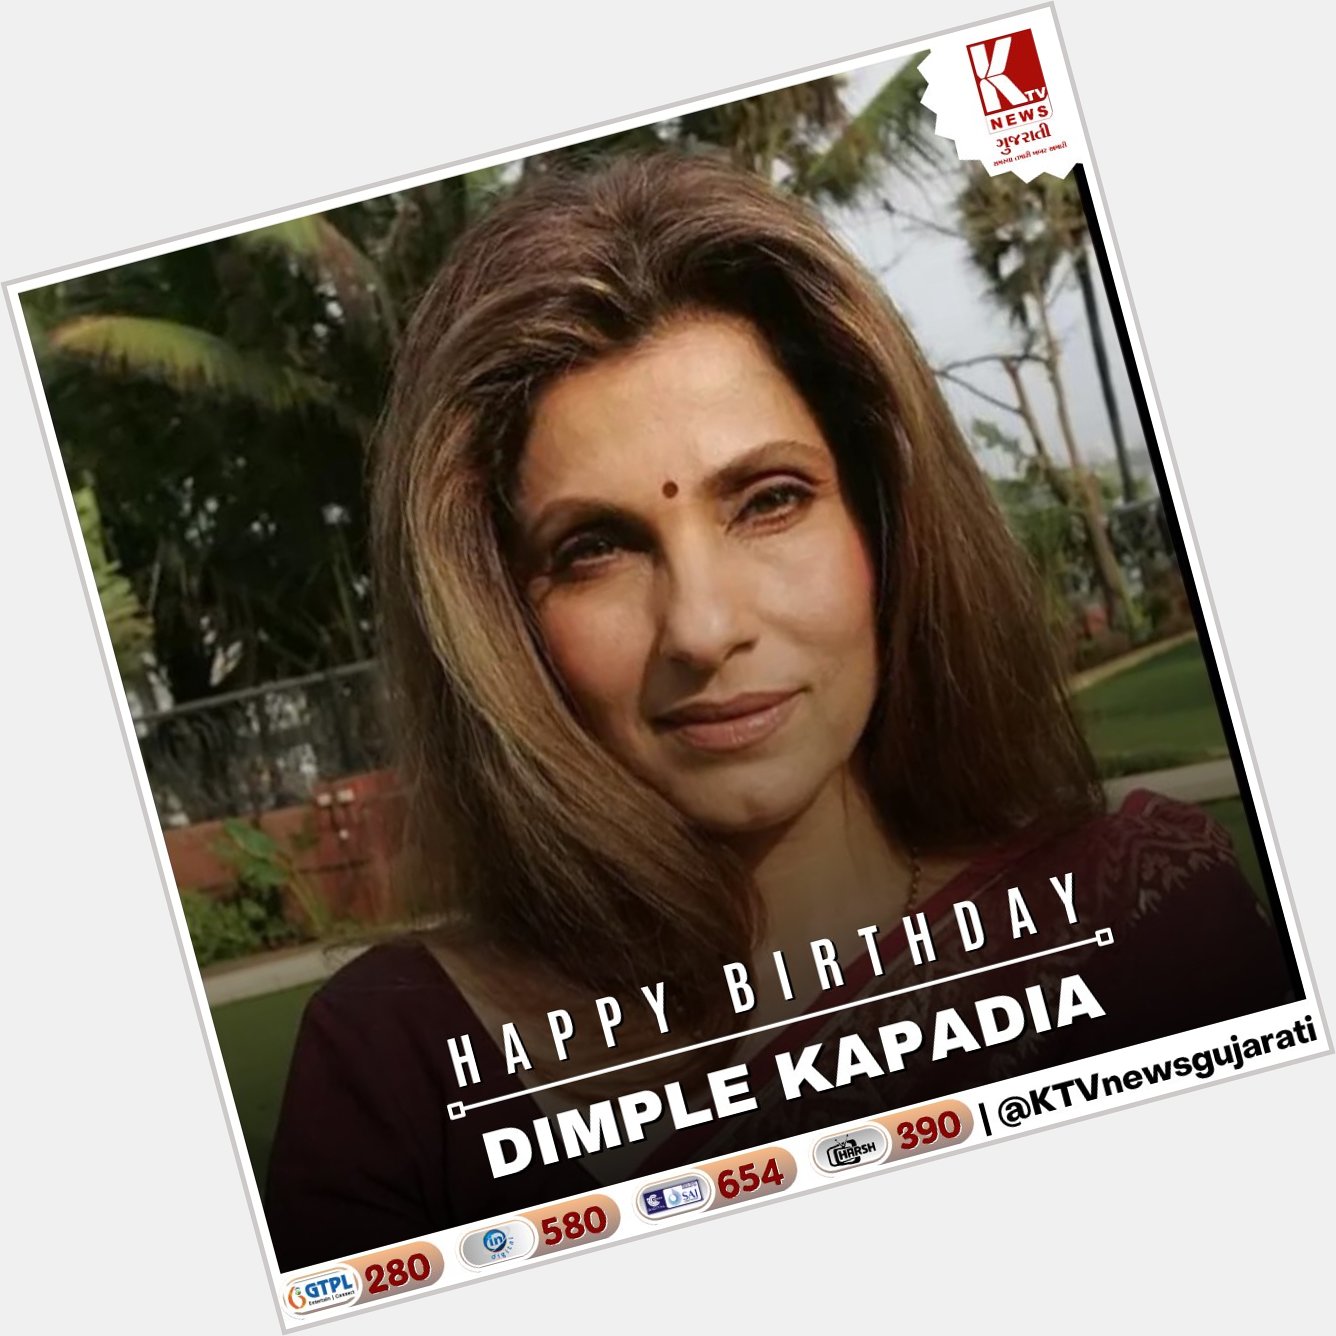 Happy Birthday Dimple Kapadia
.
.
.     